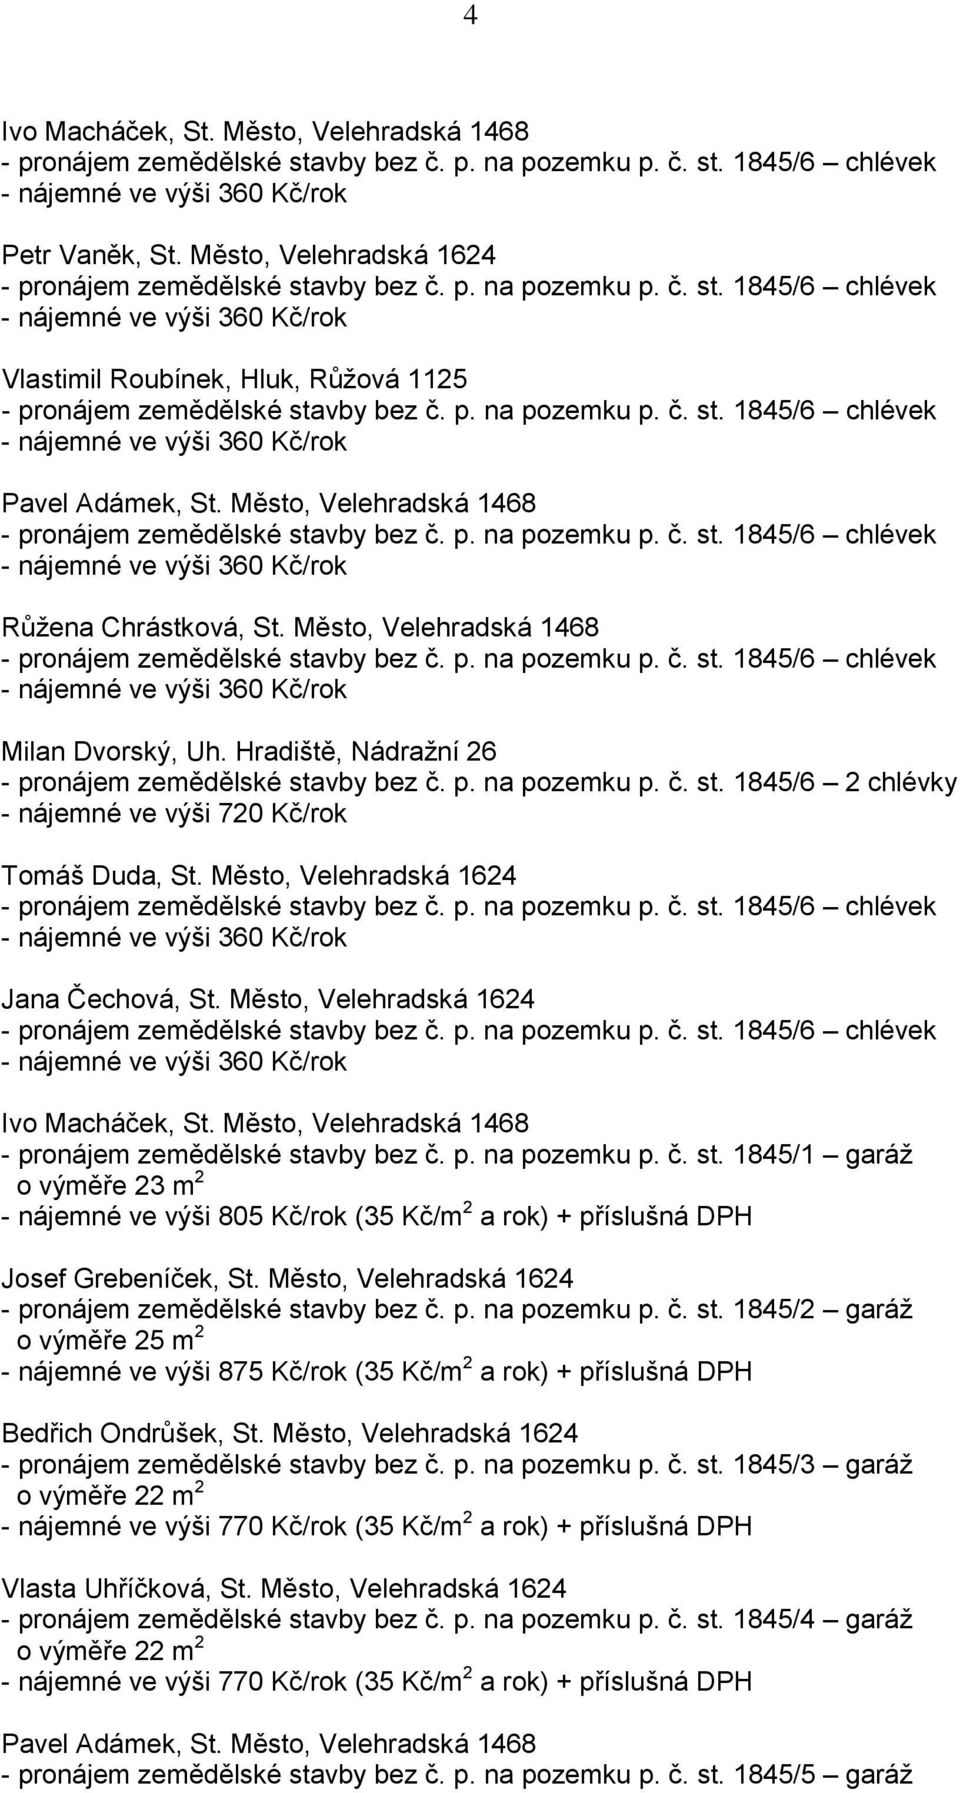 Město, Velehradská 1624 Jana Čechová, St. Město, Velehradská 1624 Ivo Macháček, St. Město, Velehradská 1468 - pronájem zemědělské sta